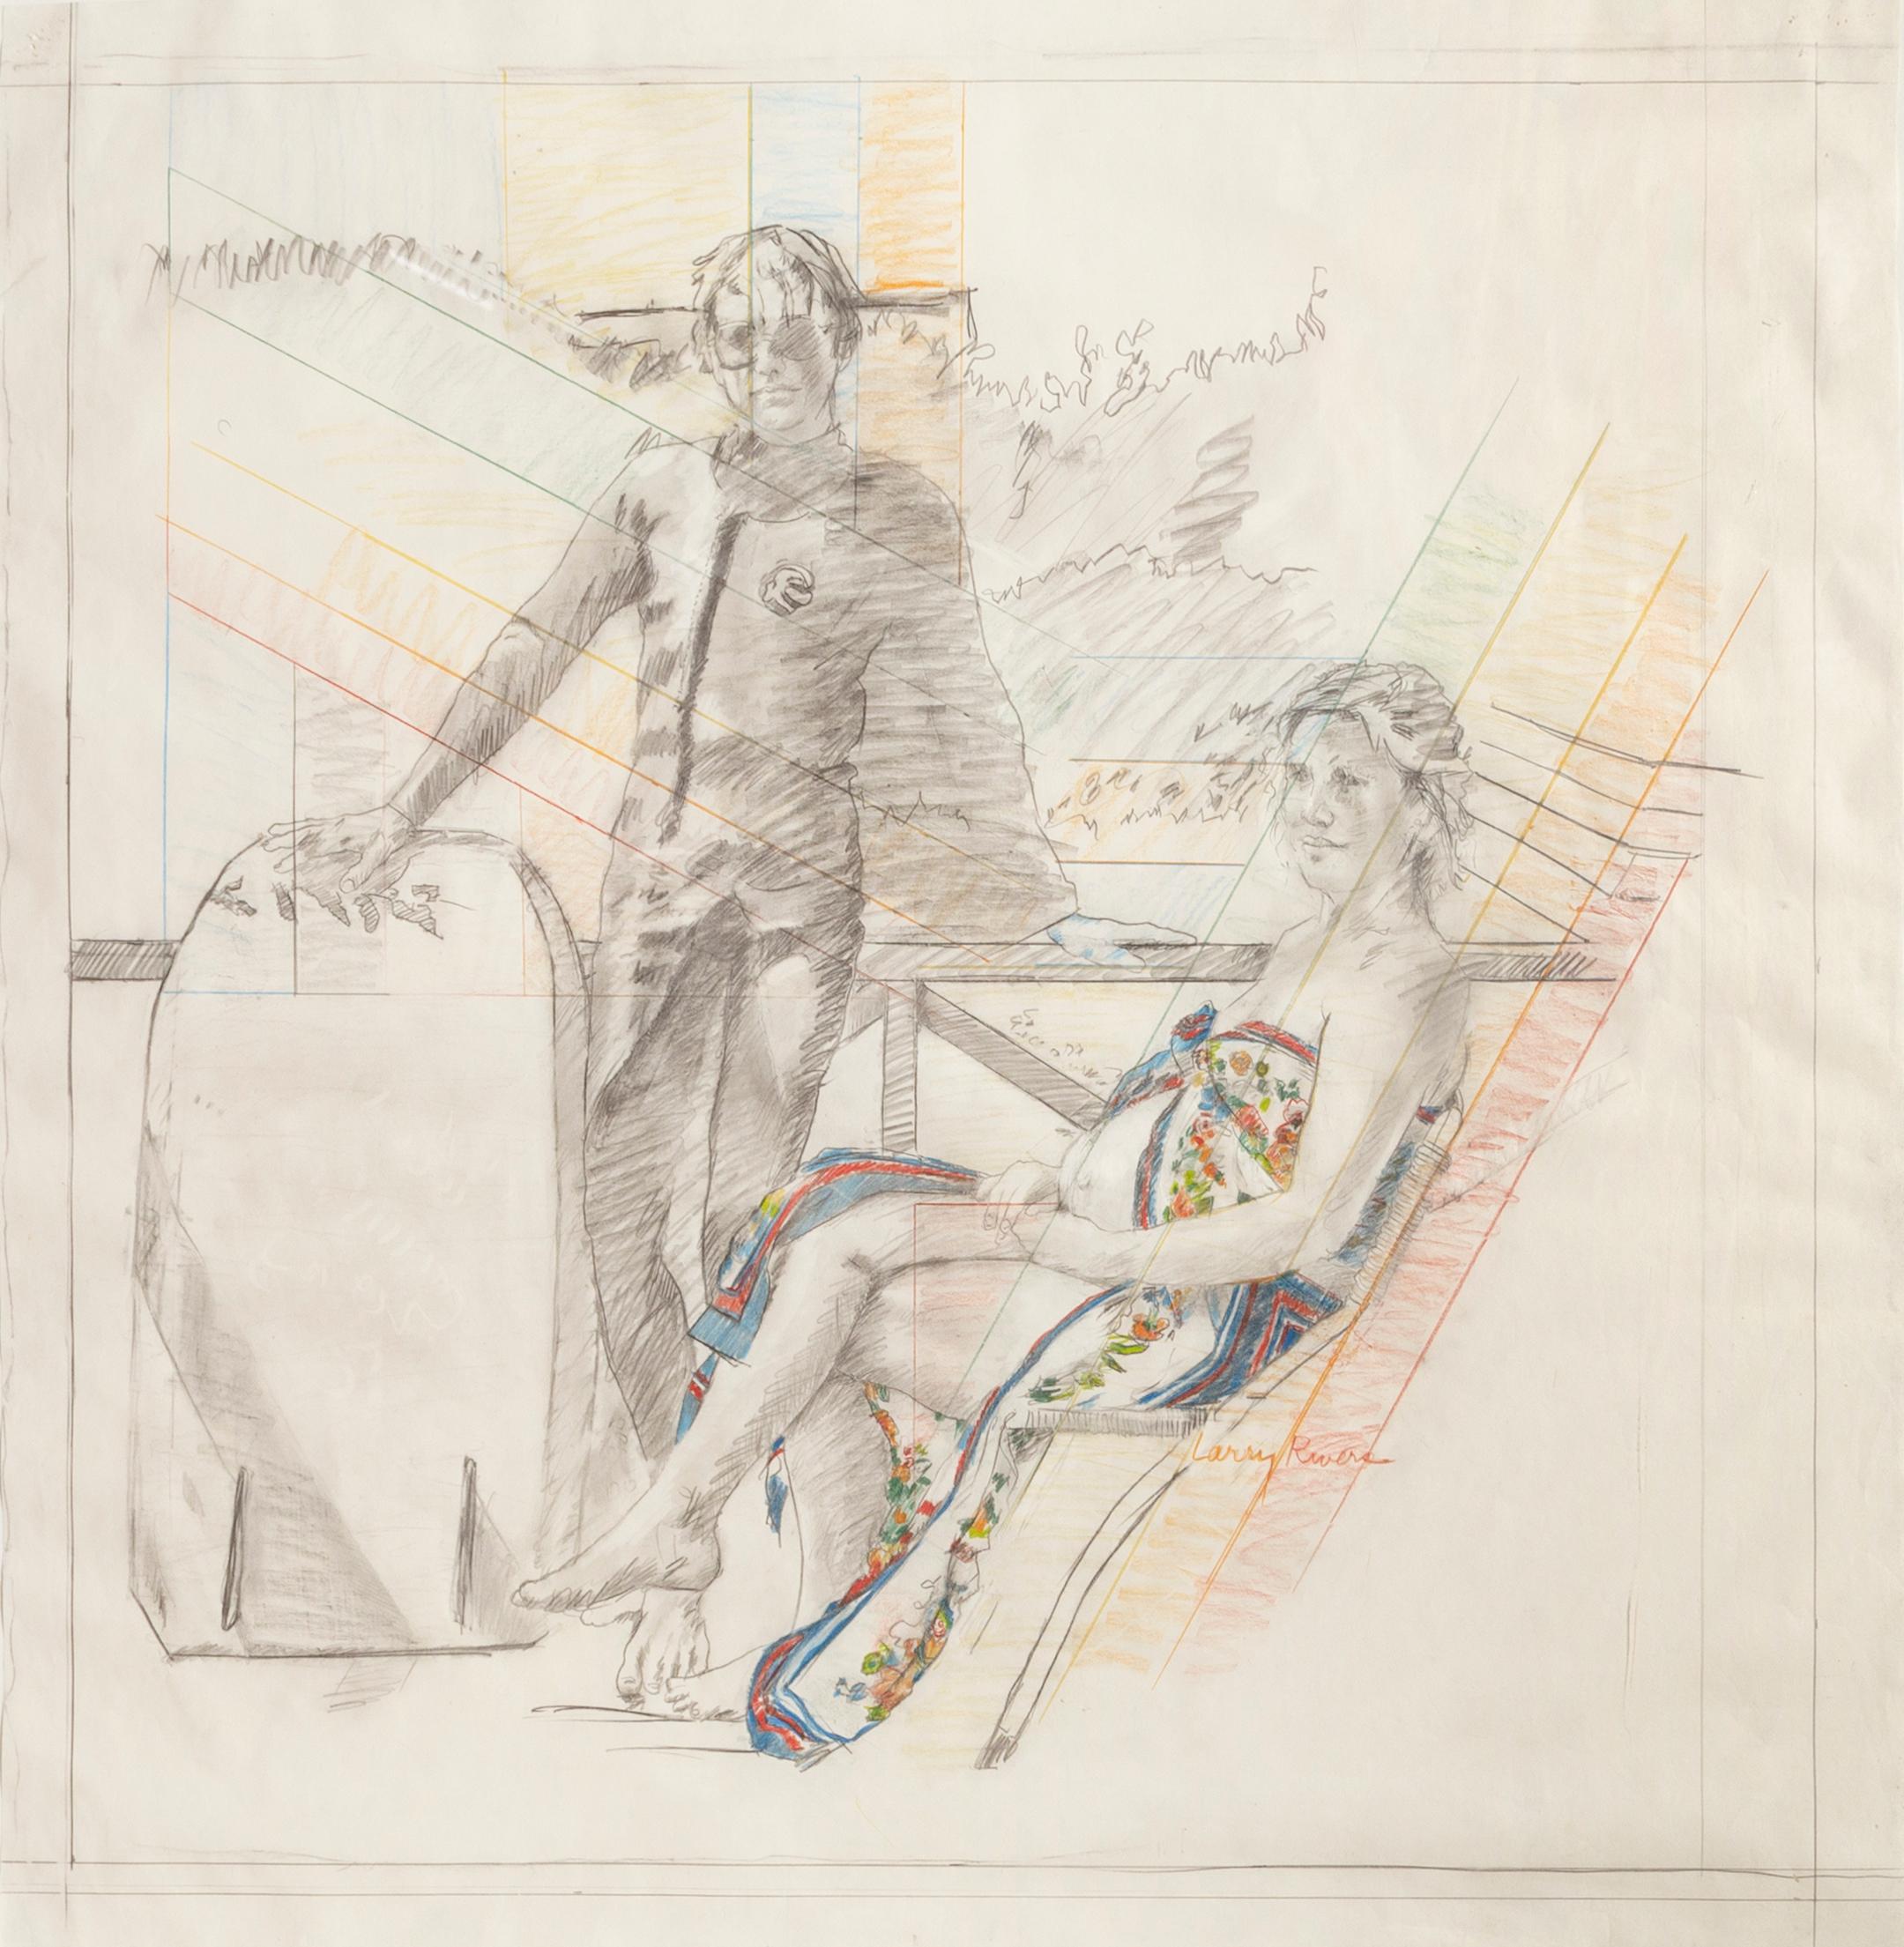 Künstler:	Larry Rivers, Amerikaner (1923 - 2002)
Titel:	Sommer-Schwangerschafts-Zeichnung
Jahr:	1977
Medium:	Farbstift und Graphit, signiert 
Papierformat:	36,5 x 35 Zoll
Rahmengröße: 44,5 x 42,5 Zoll